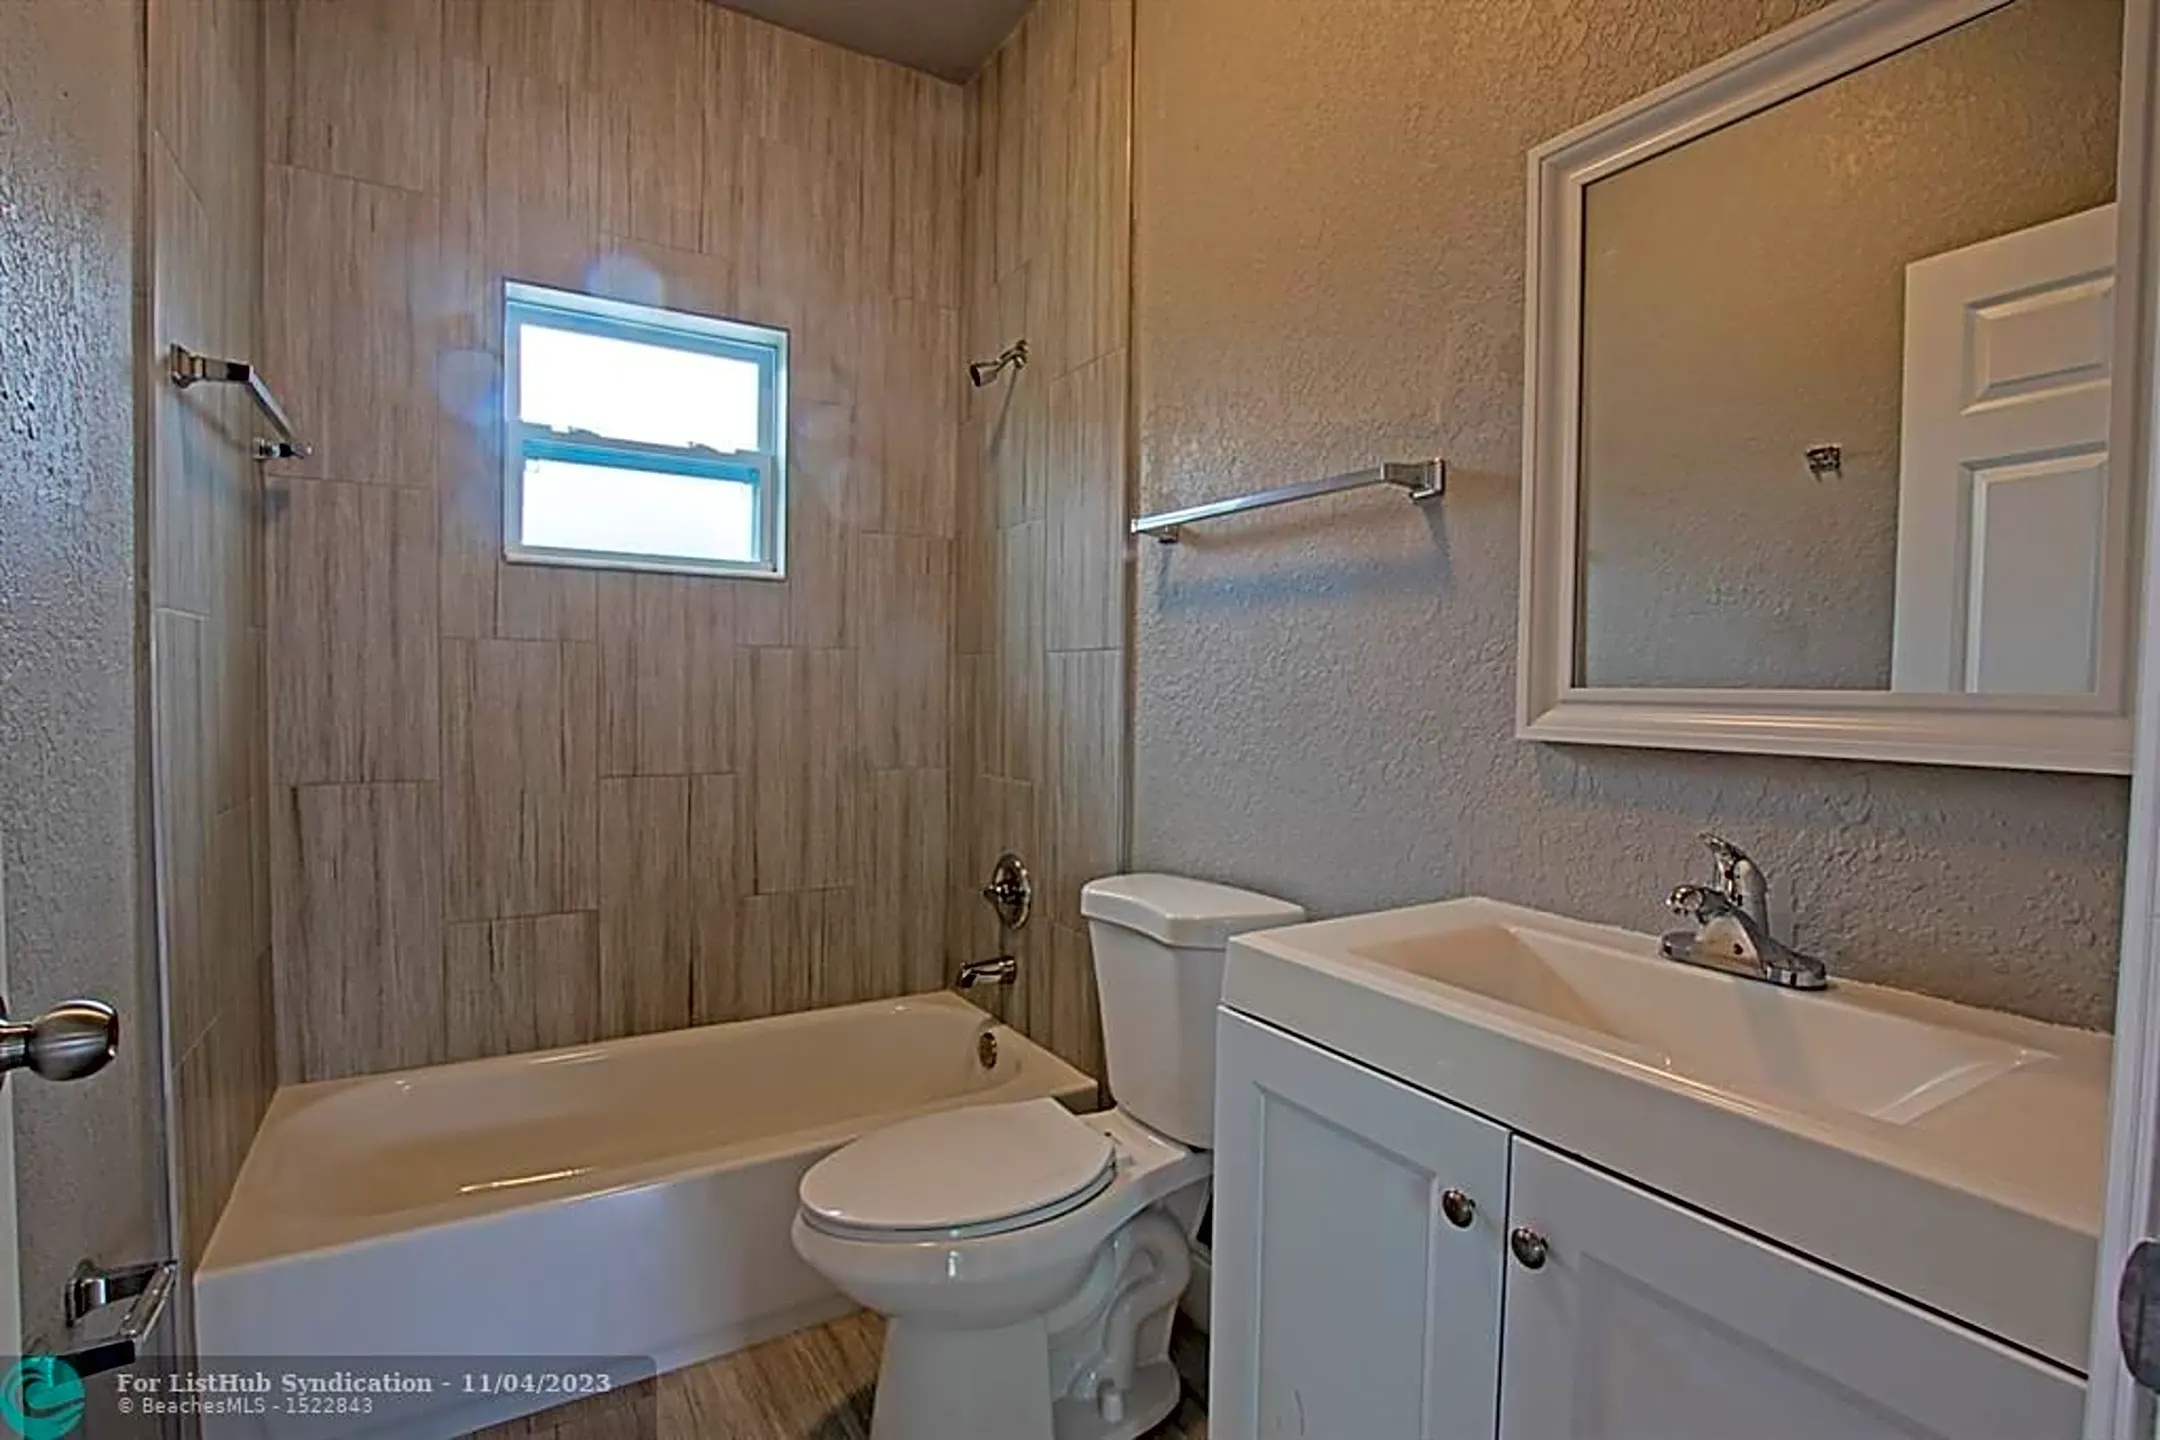 Bathroom - 2019 NW 64th Ave - Sunrise, FL